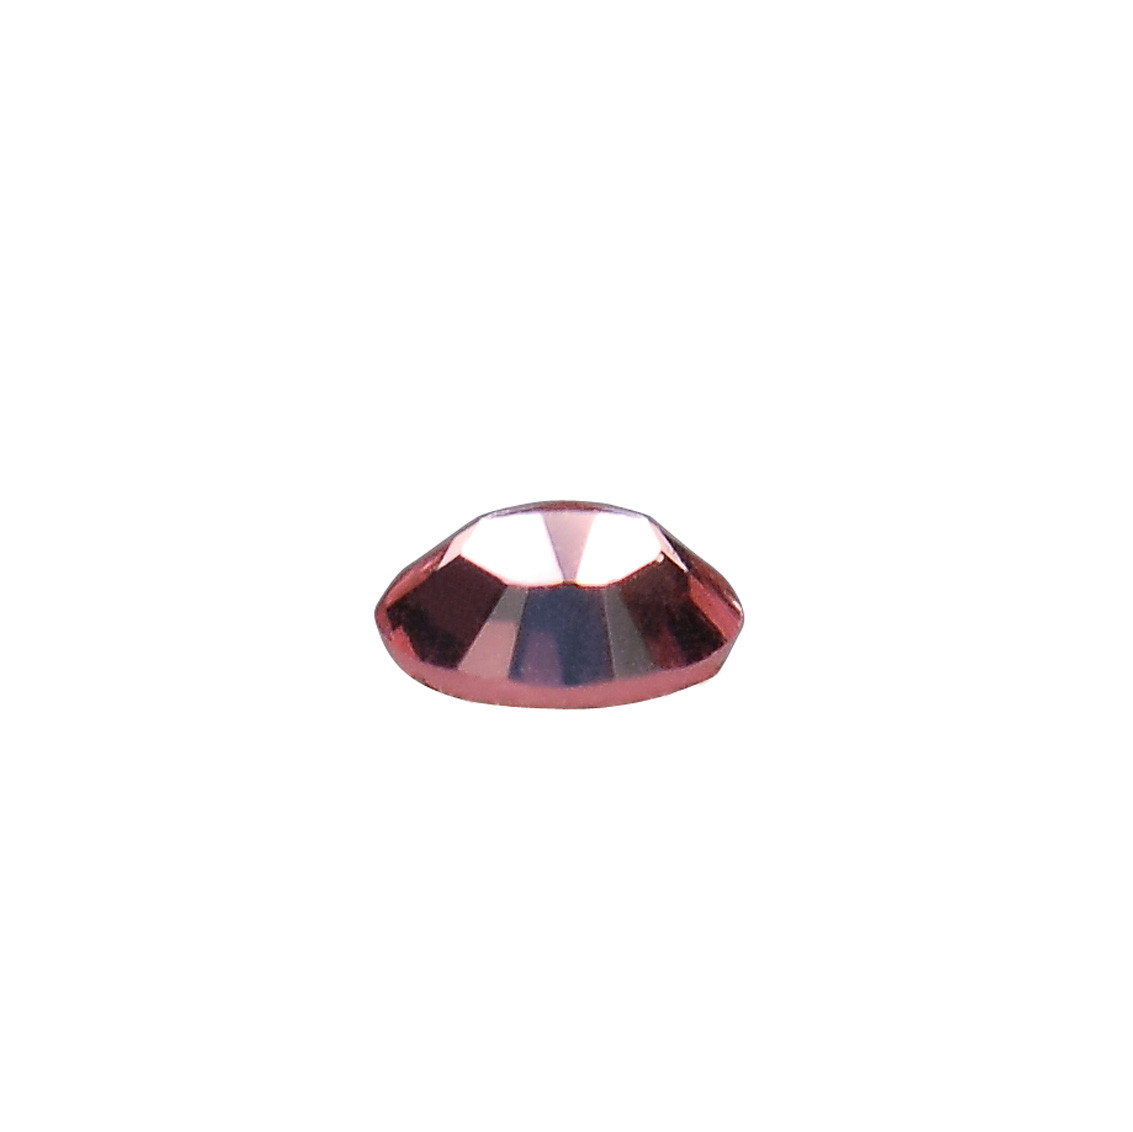 Swarovski® Kristalle für Nailart Light Rose Größe SS6 1440 Stk.